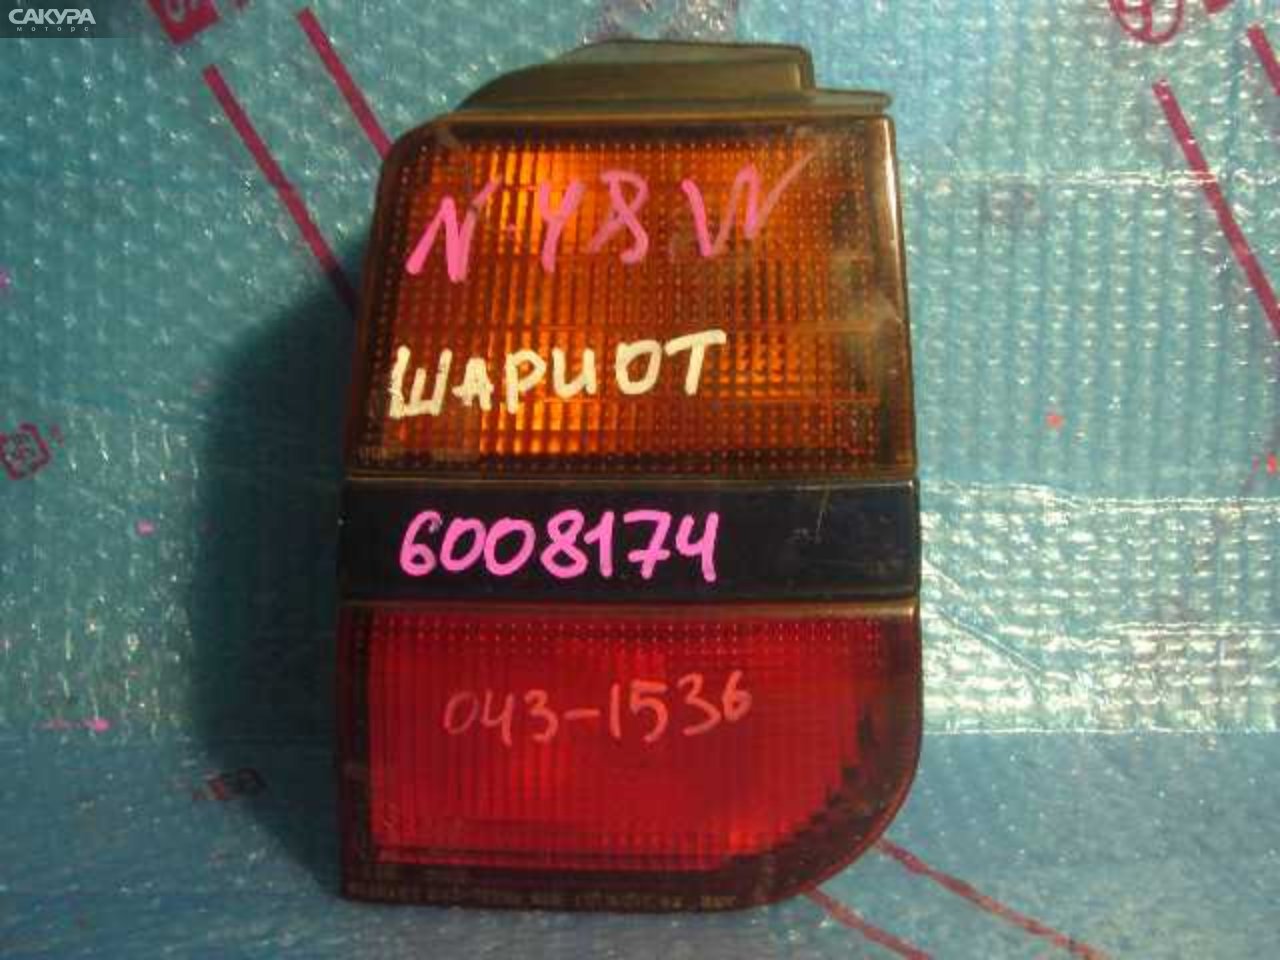 Фонарь стоп-сигнала правый Mitsubishi Chariot N48W 043-1536: купить в Сакура Кемерово.